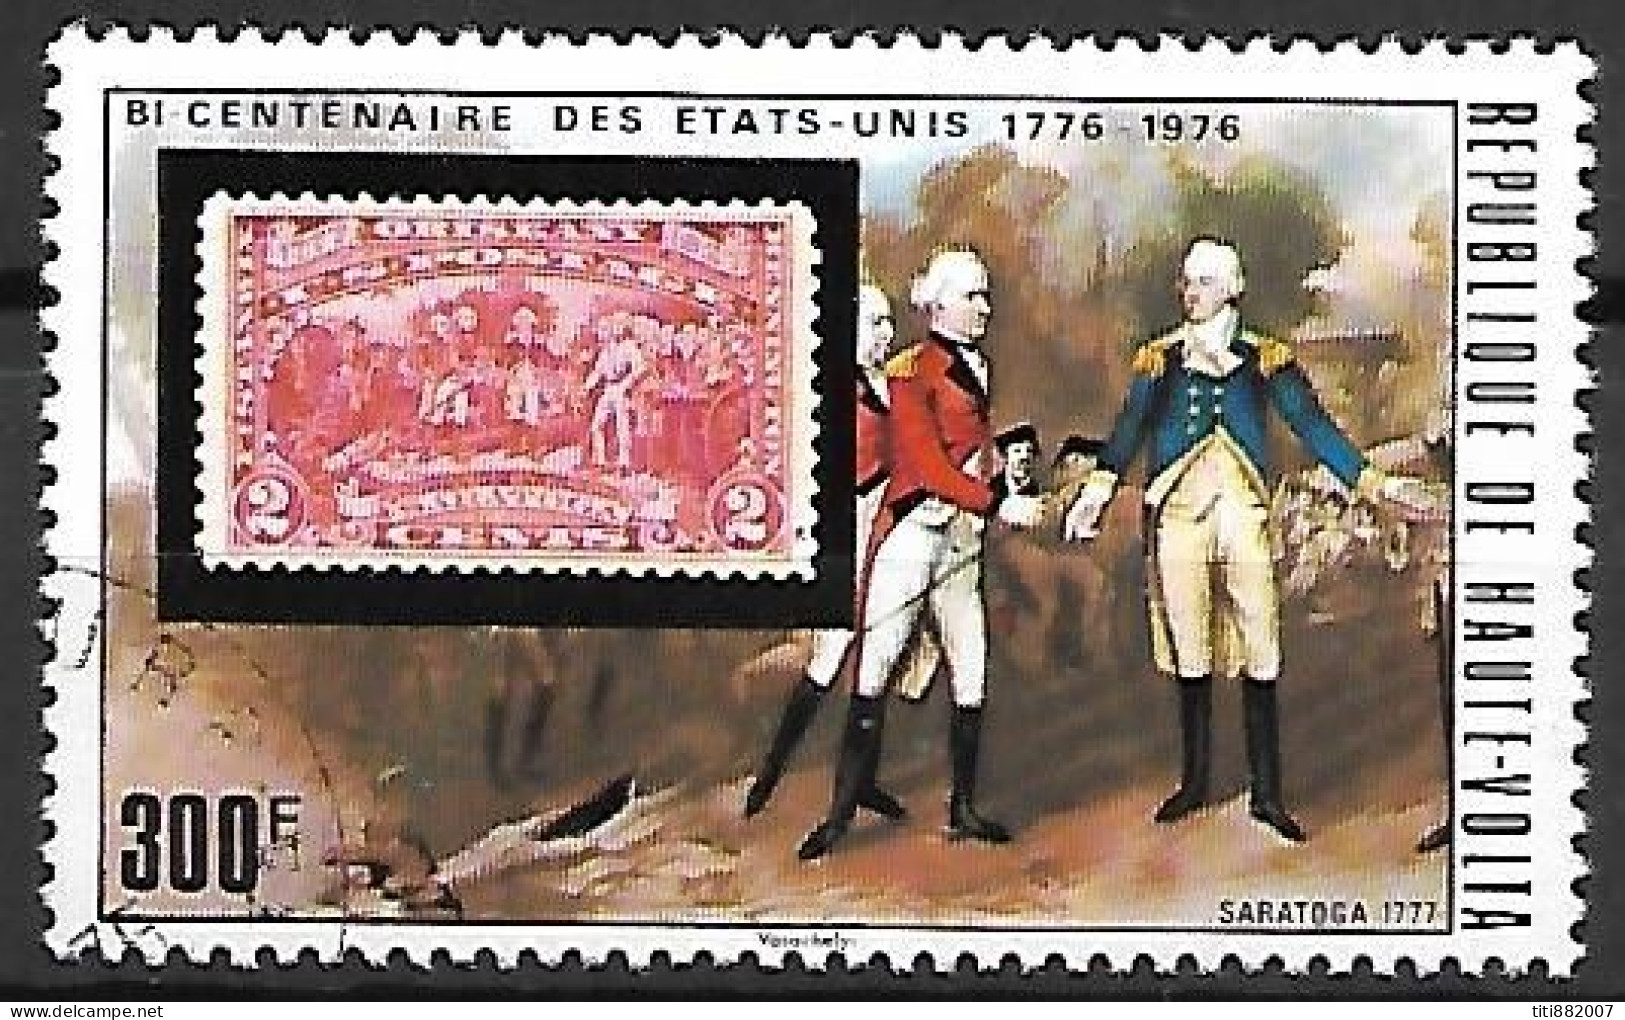 HAUTE  VOLTA    -   Bi Centenaire  Des  Etats-Unis   /   Saratoga 1777  -  Oblitéré - Indépendance USA